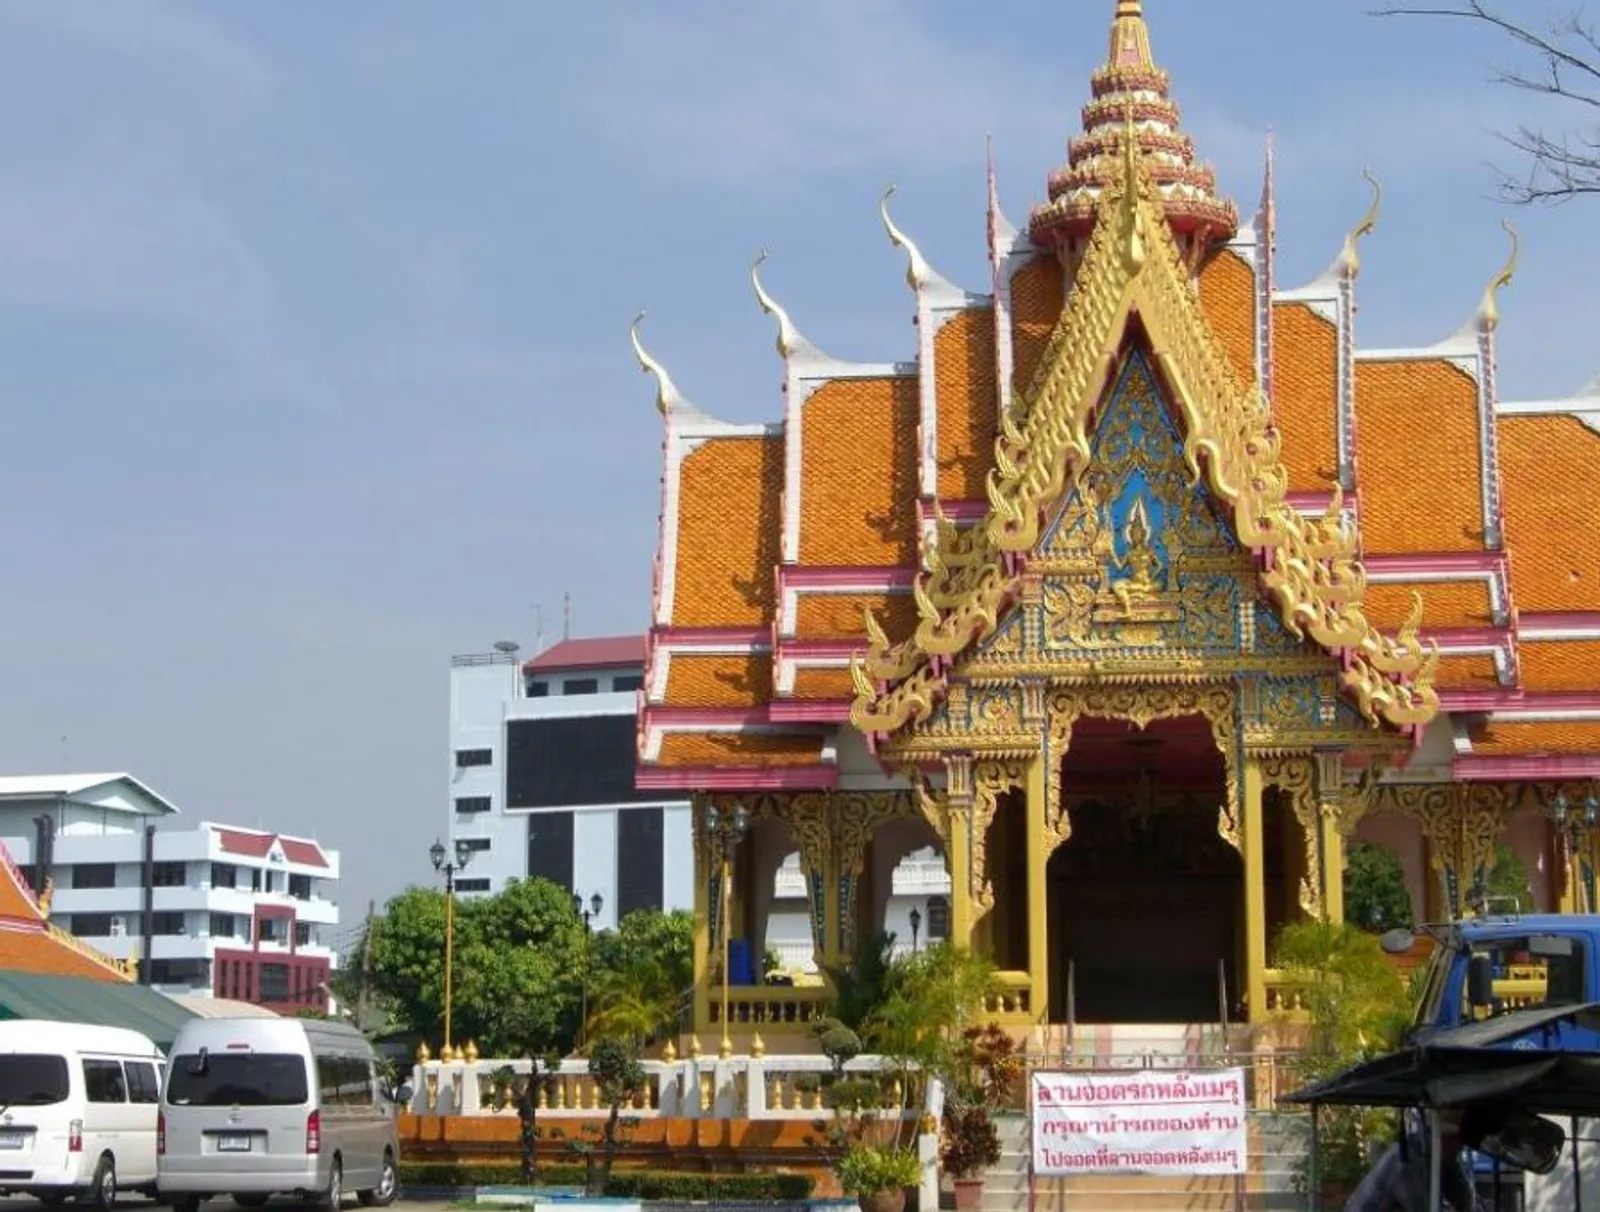 Mengenal Kuil Mae Nak, Kisah Antara Manusia dan Hantu yang Mengharukan